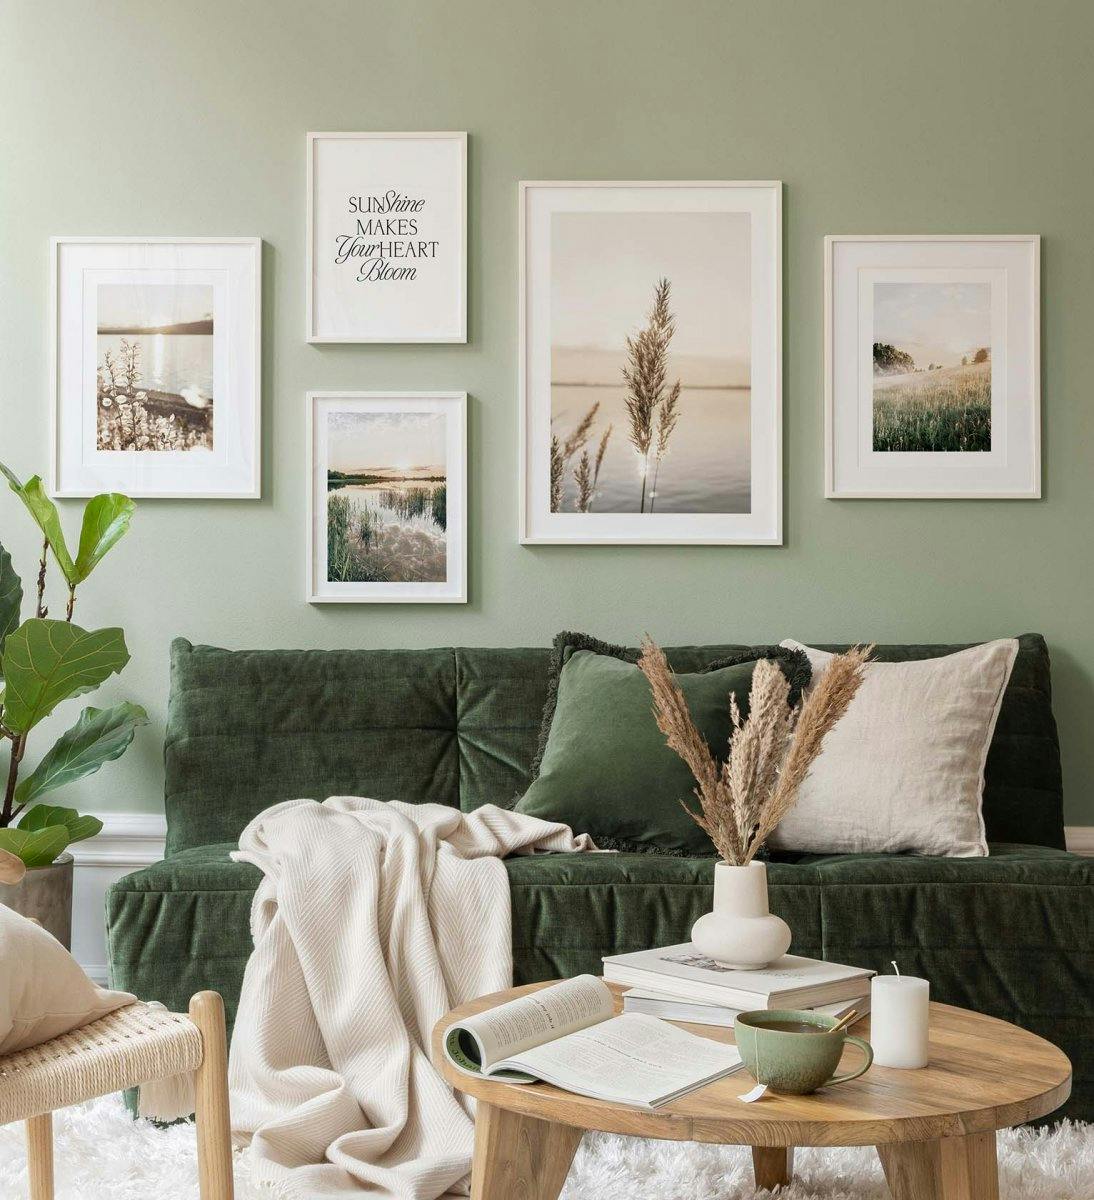 Tavelvägg med landskapsposters i grönt tema skapar en lugn känsla i vardagsrummet